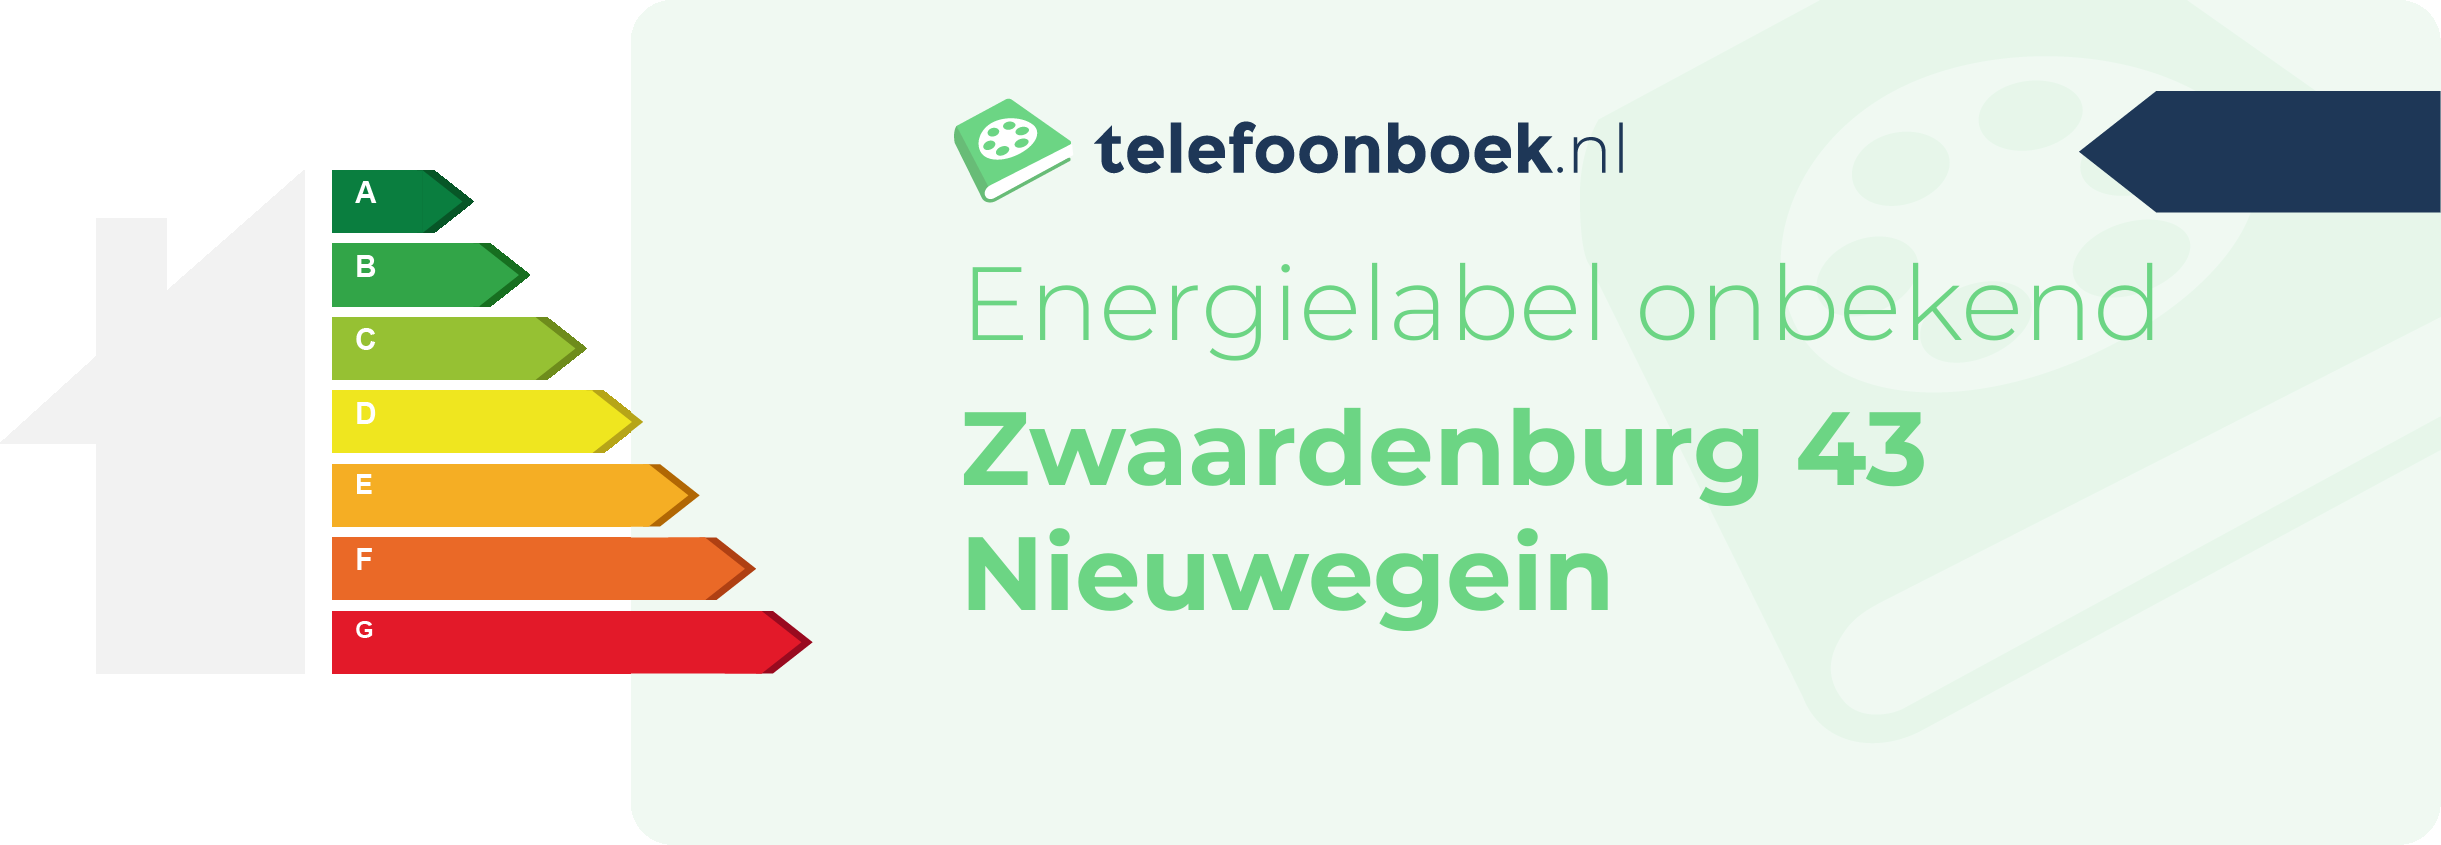 Energielabel Zwaardenburg 43 Nieuwegein